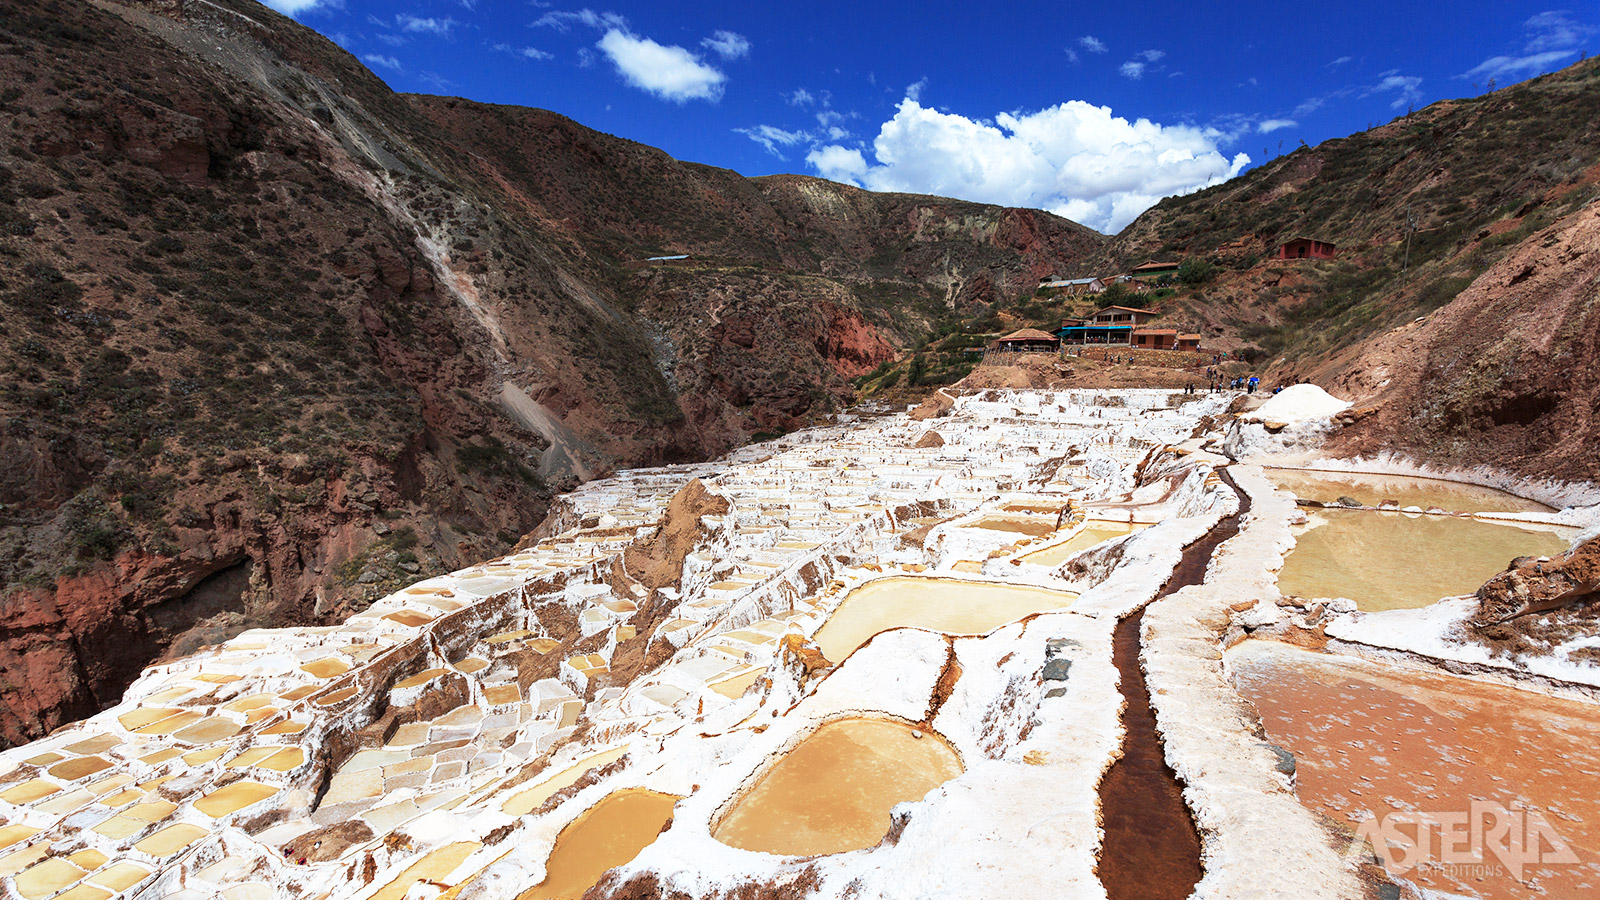 De zoutpannen van Maras zijn een zoutwinningsplaats op een hoogte van 3.500m die nog door de Inca’s werden gebruikt